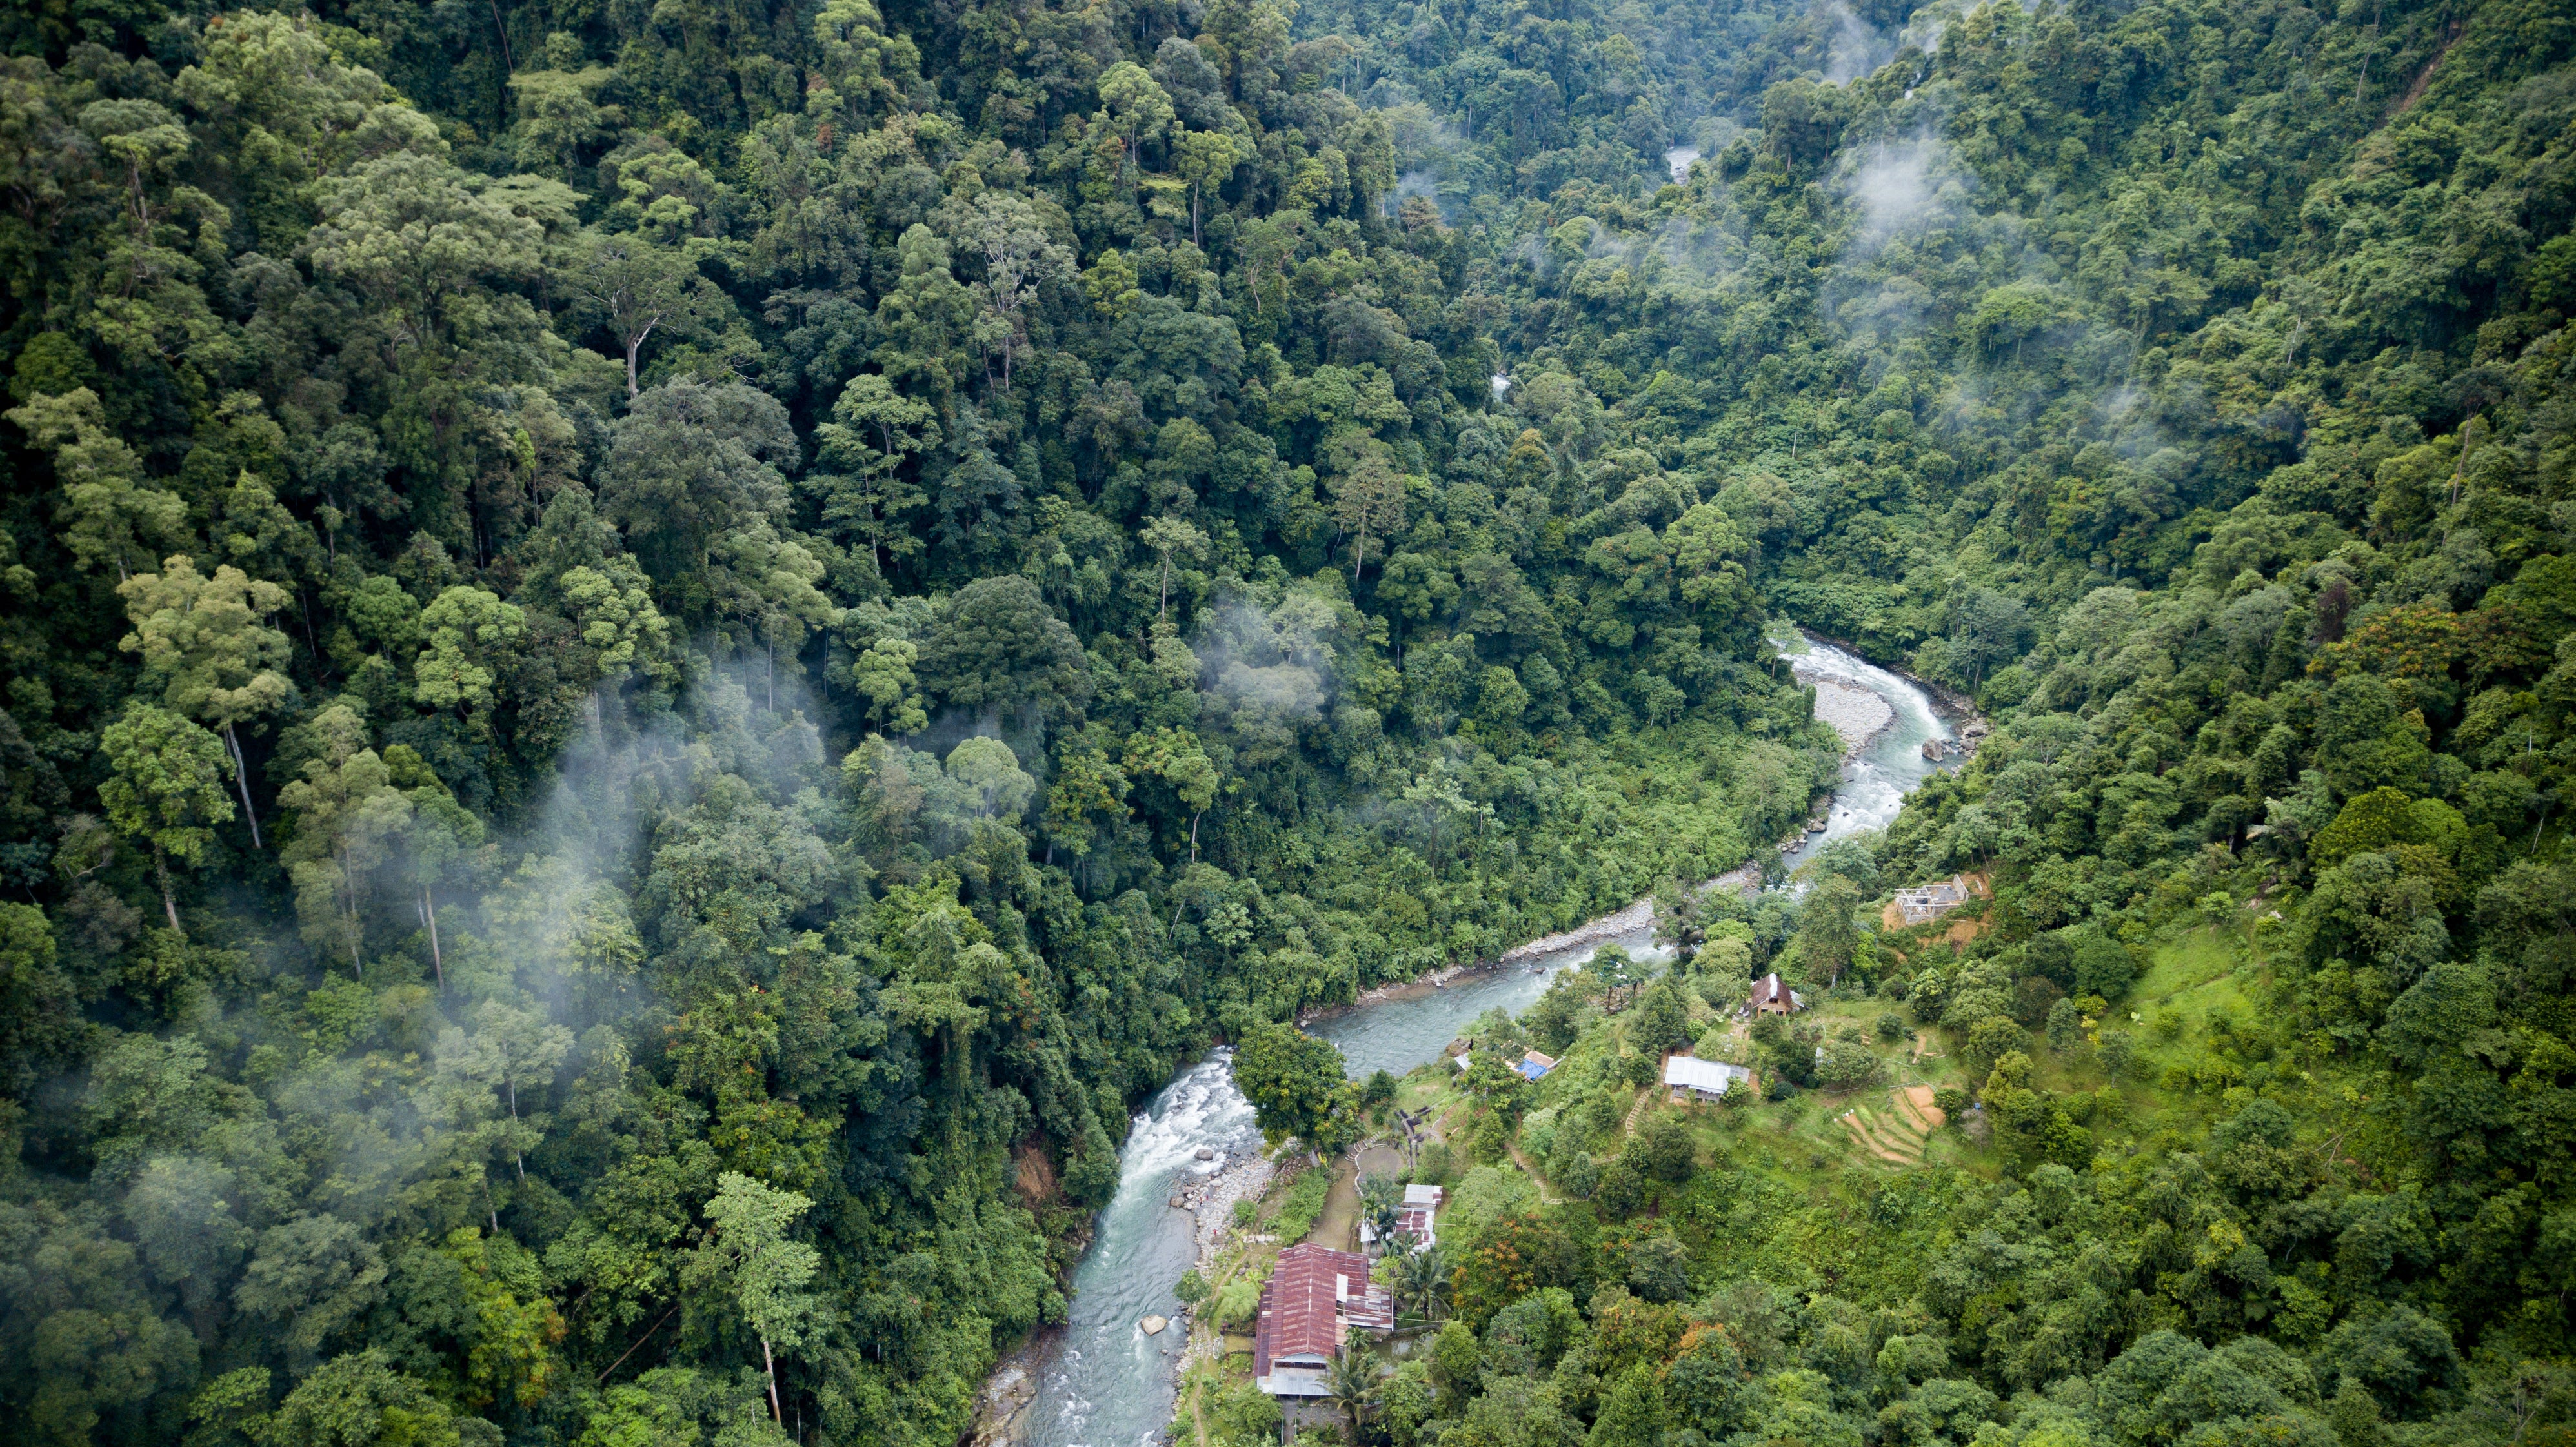 Gunung Leuser National Park is teeming with wildlife